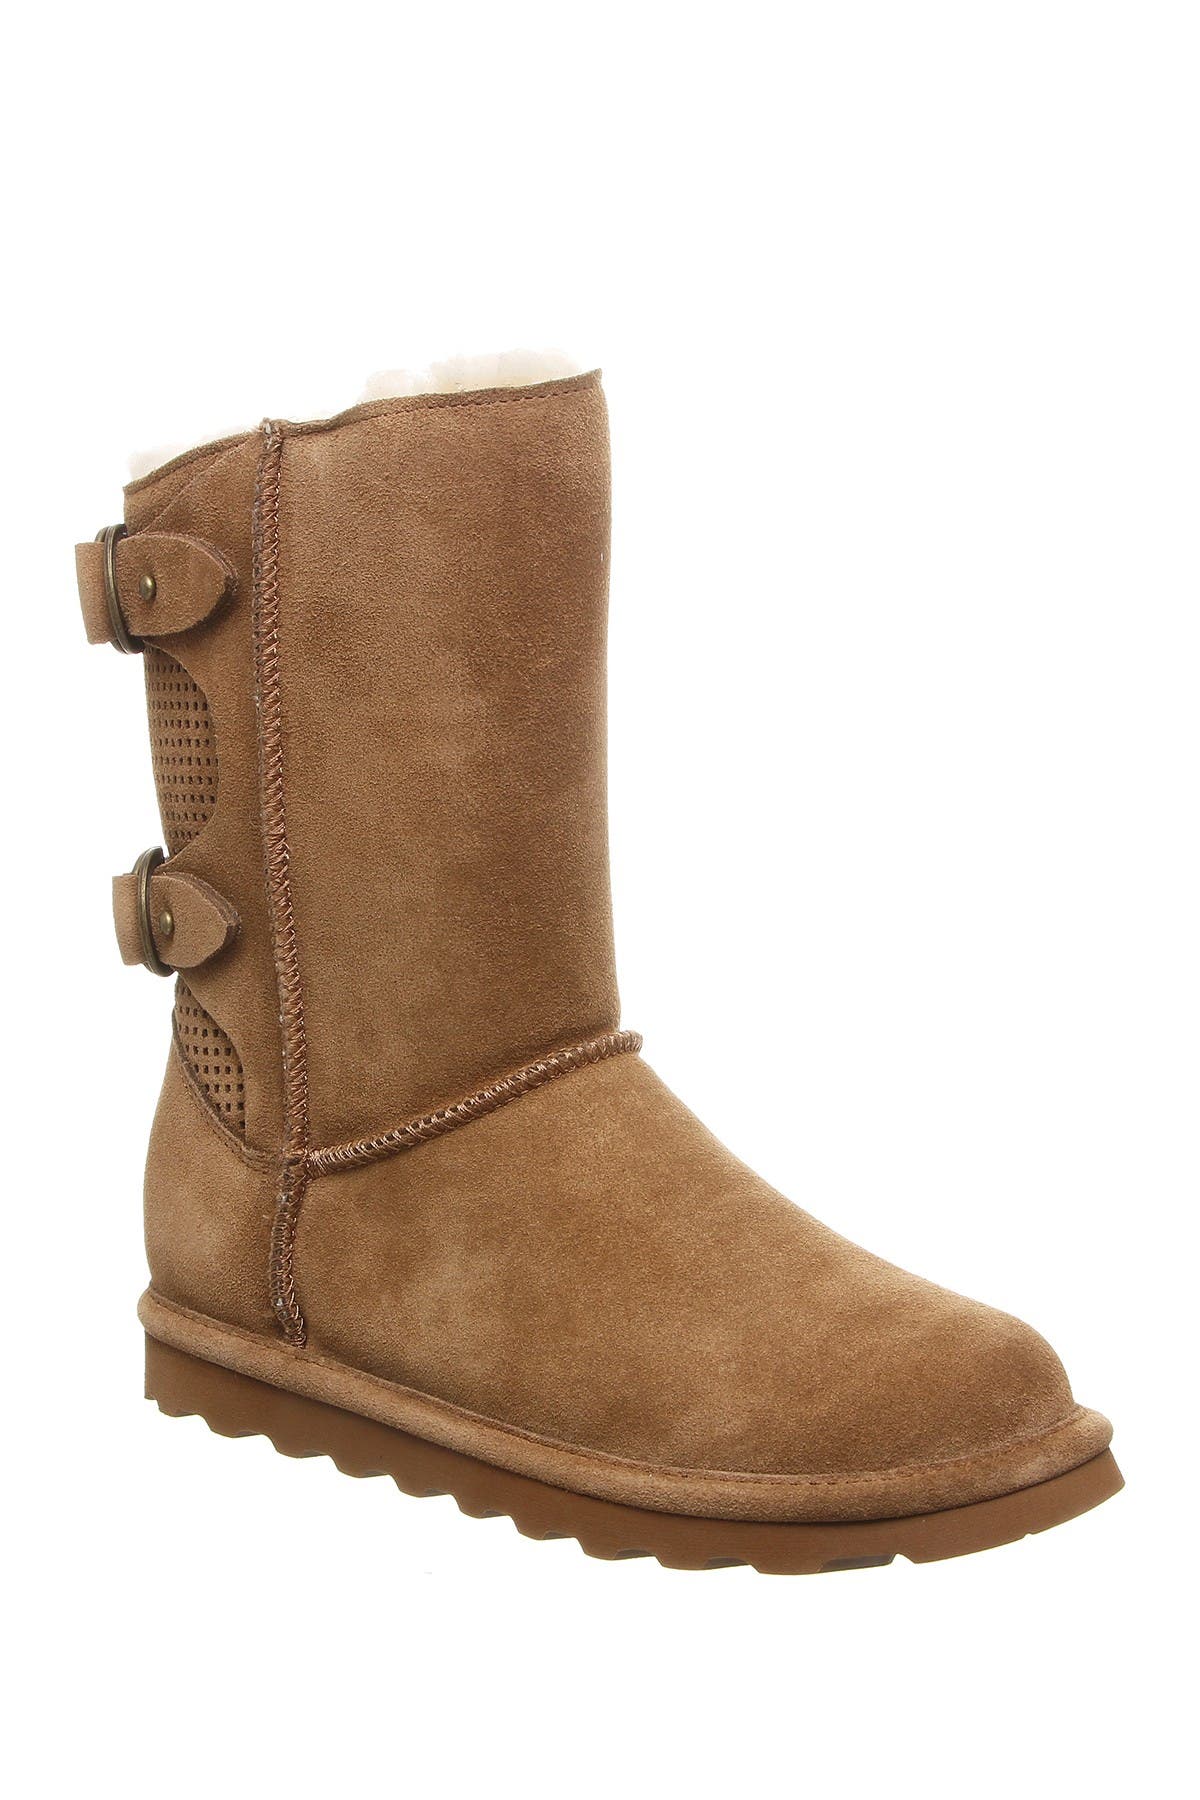 bearpaw boots womens wide width